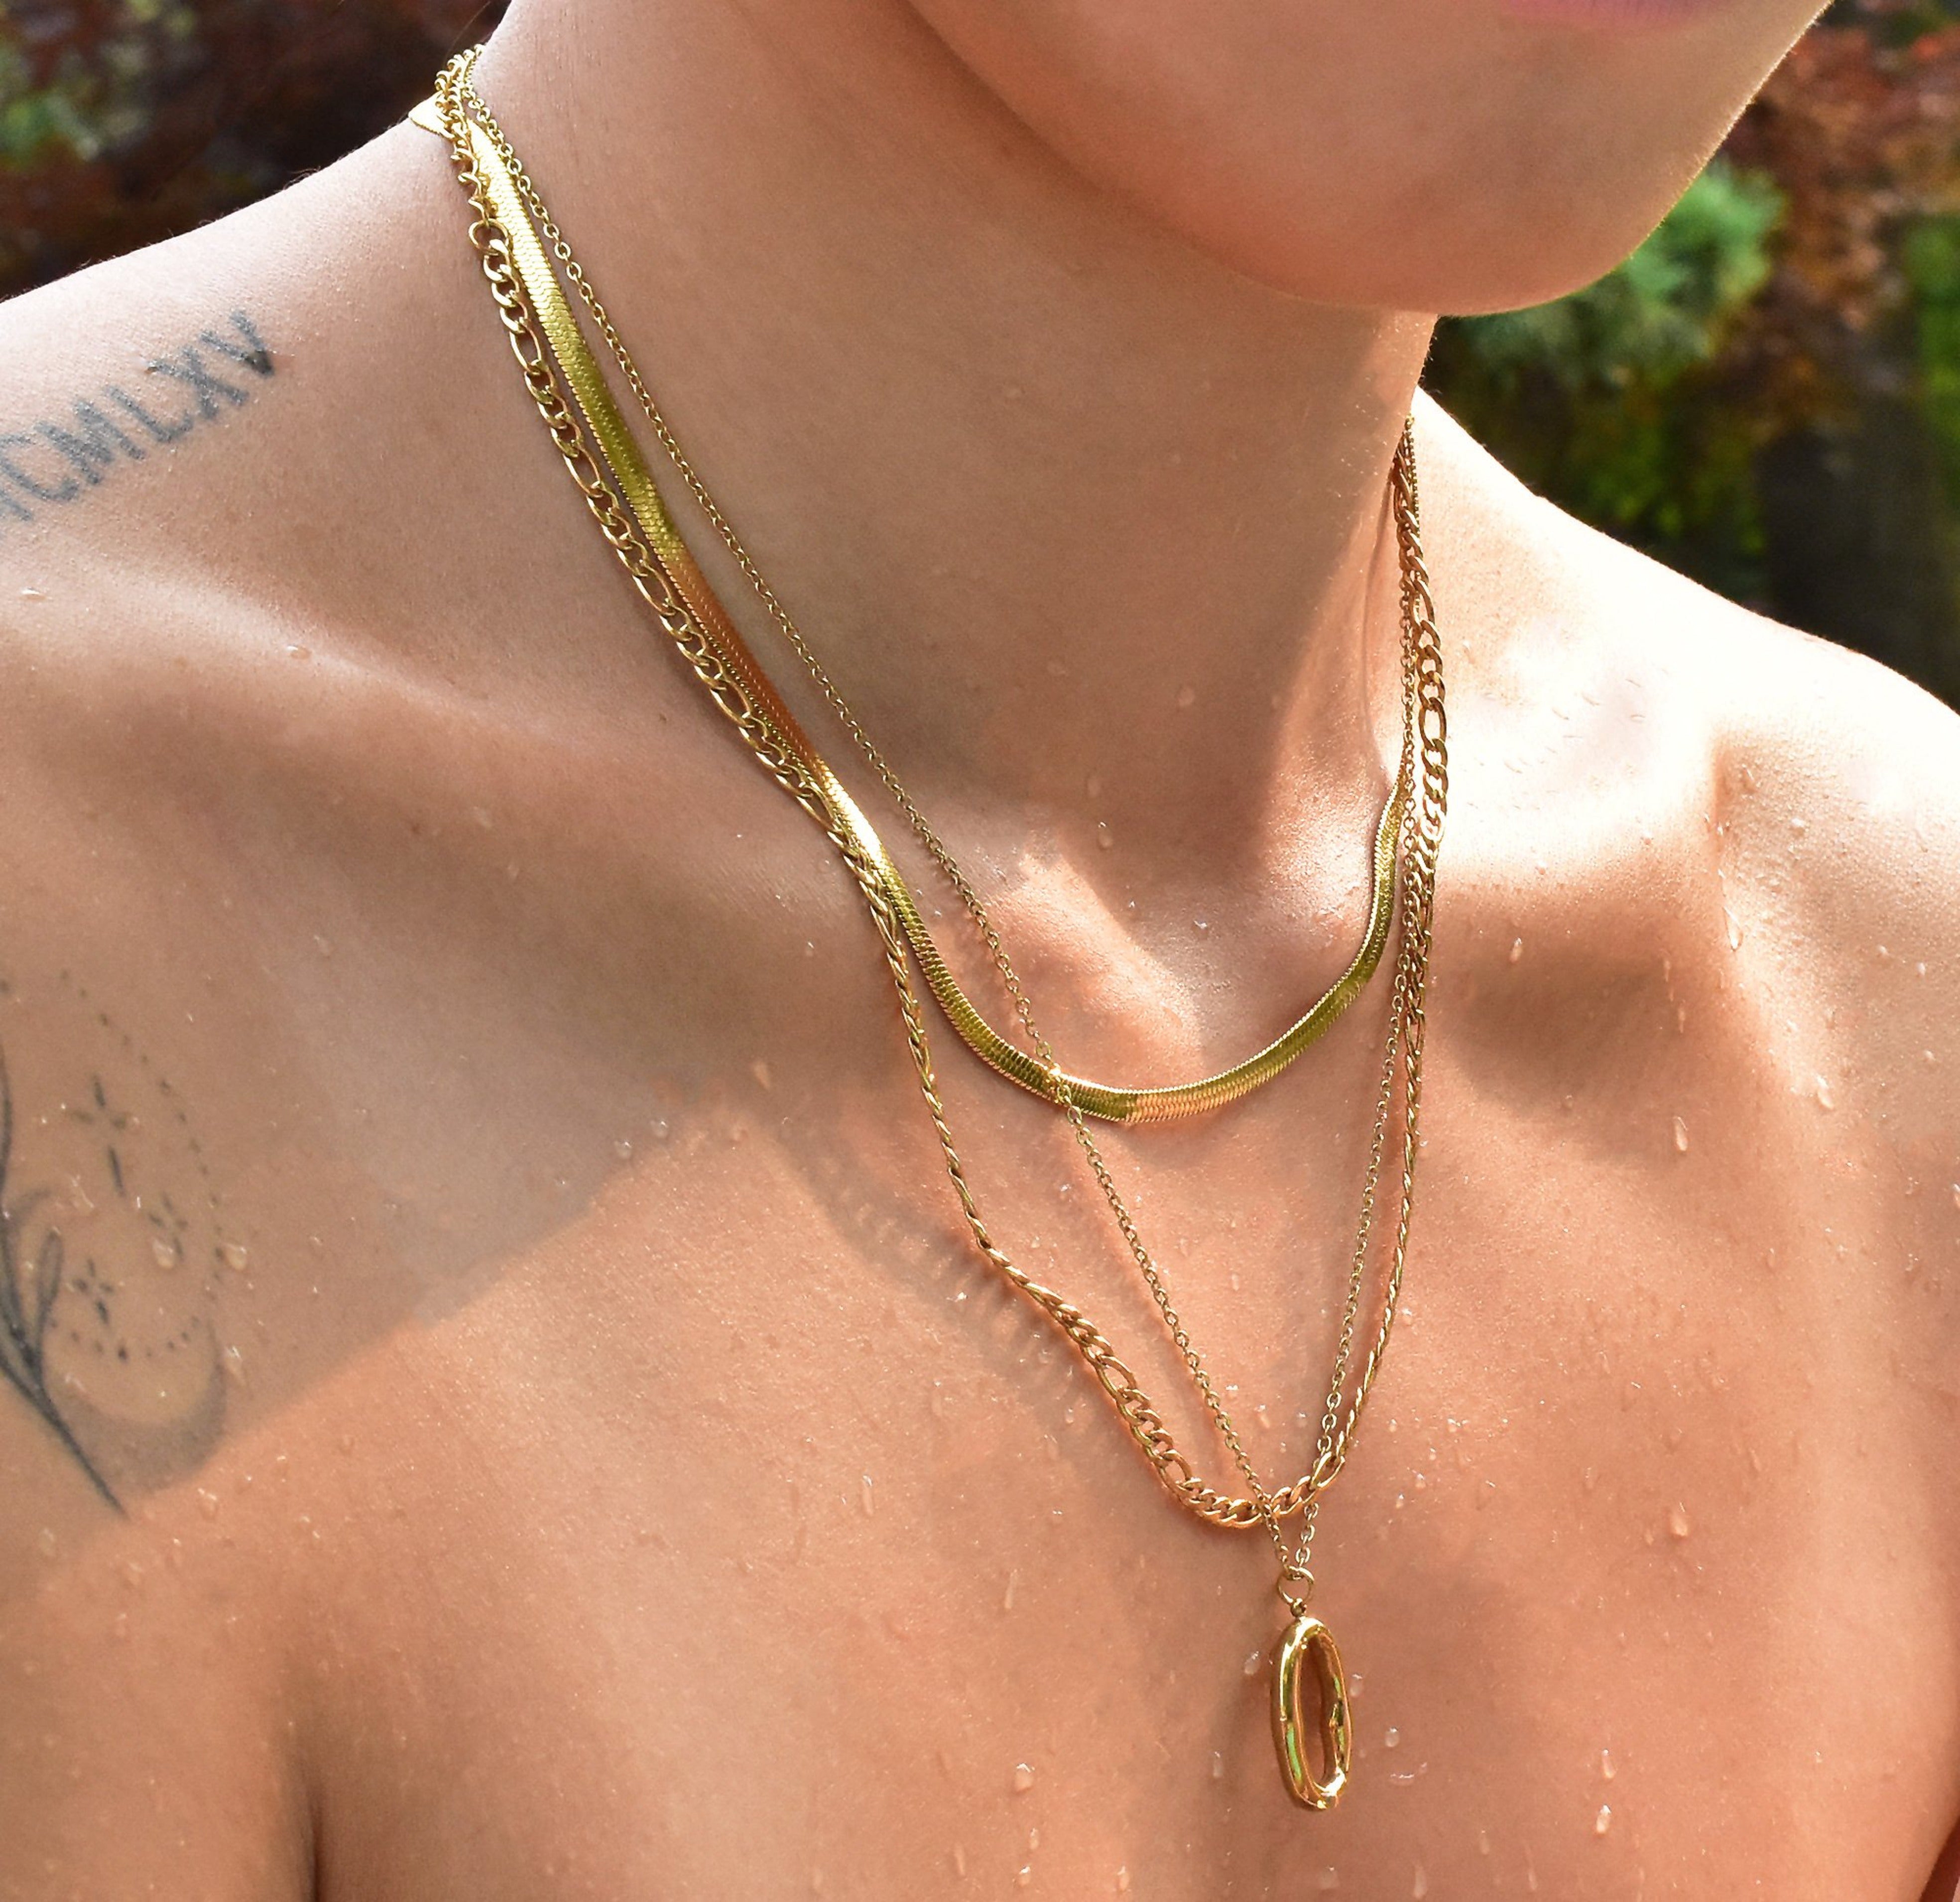 gold necklaces sweatproof